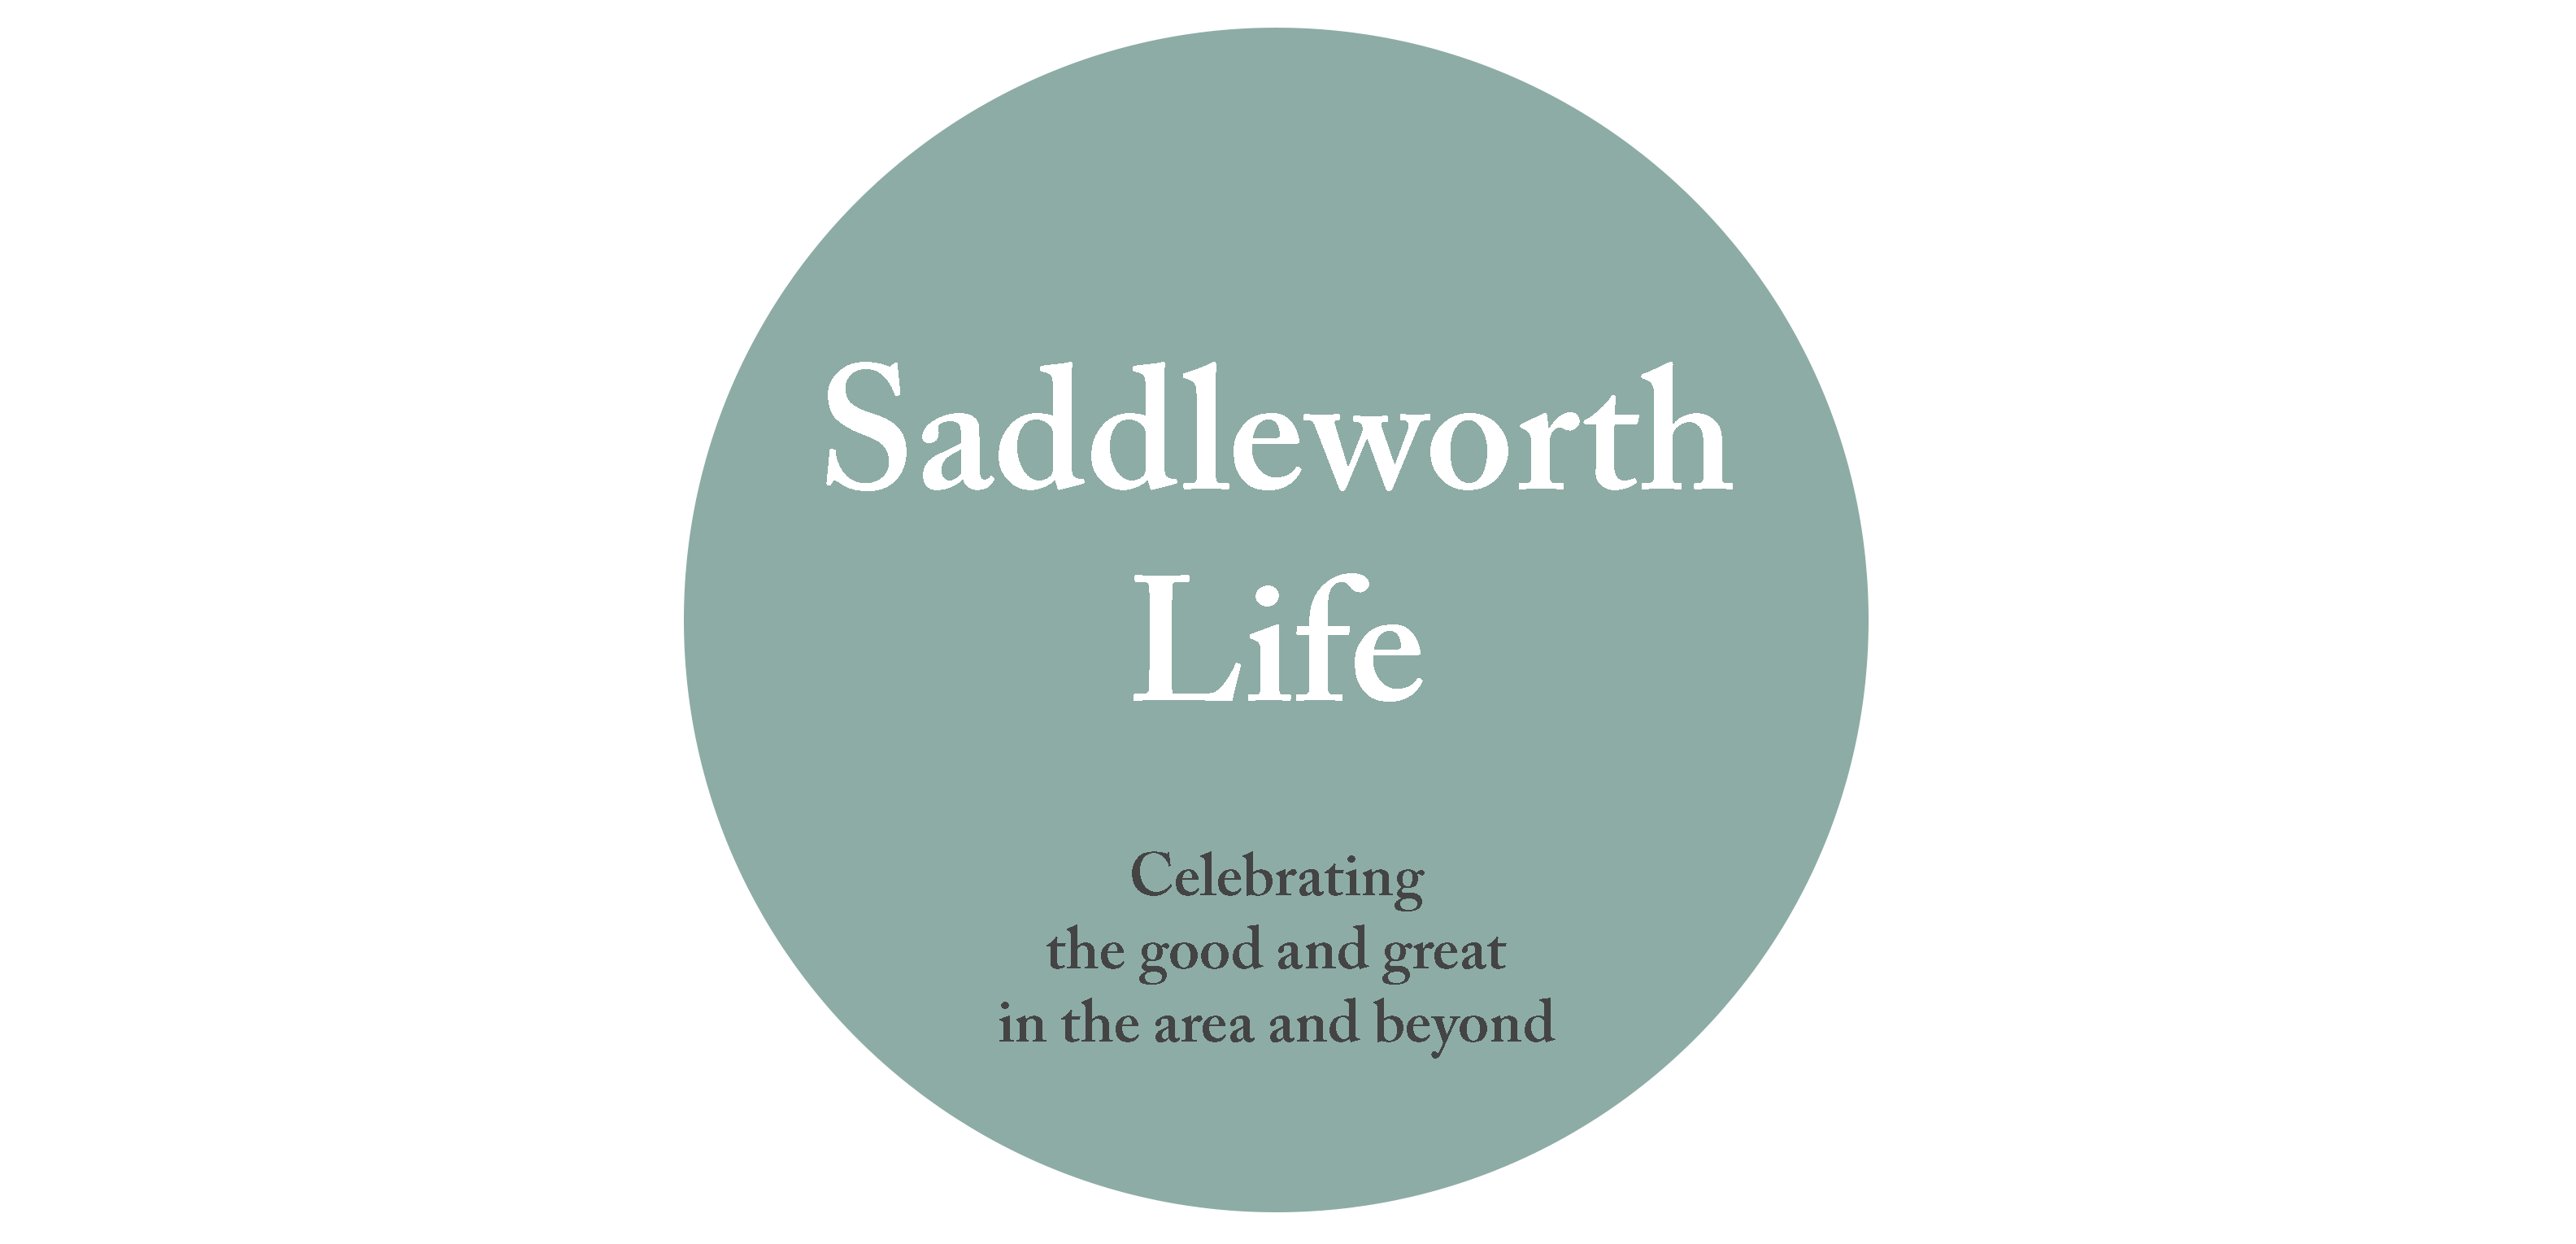 SADDLEWORTH LIFE